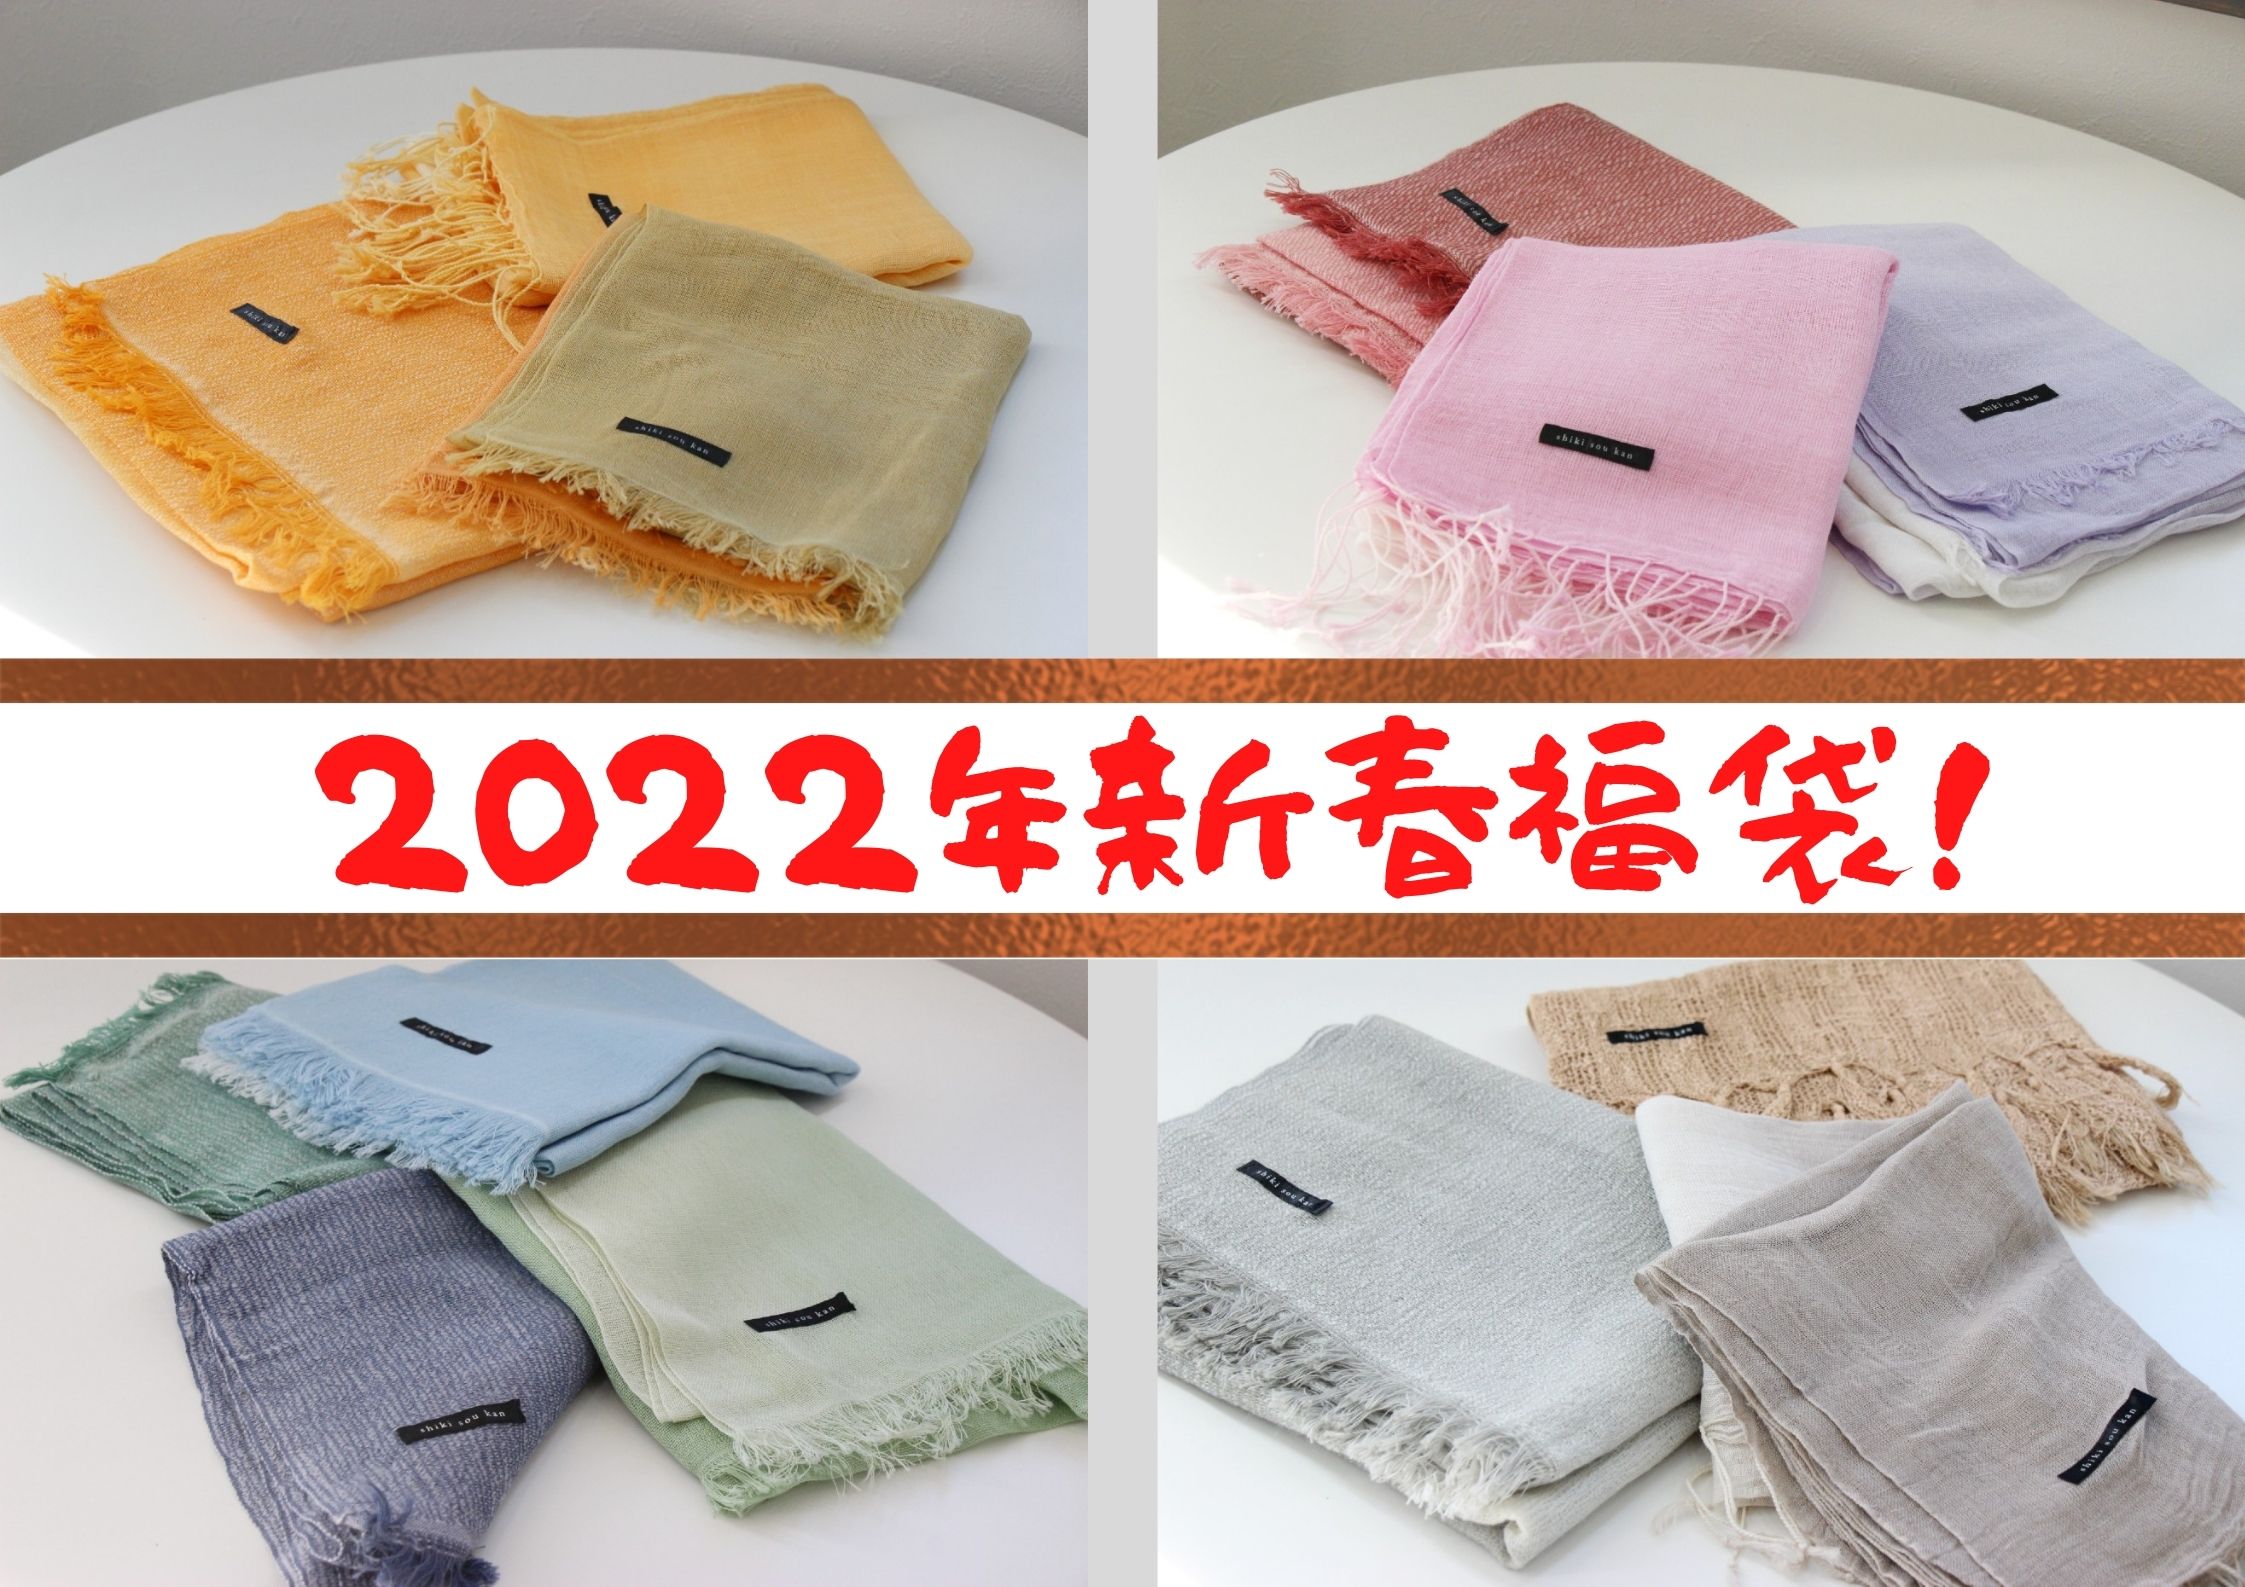 2022年 豪華福袋